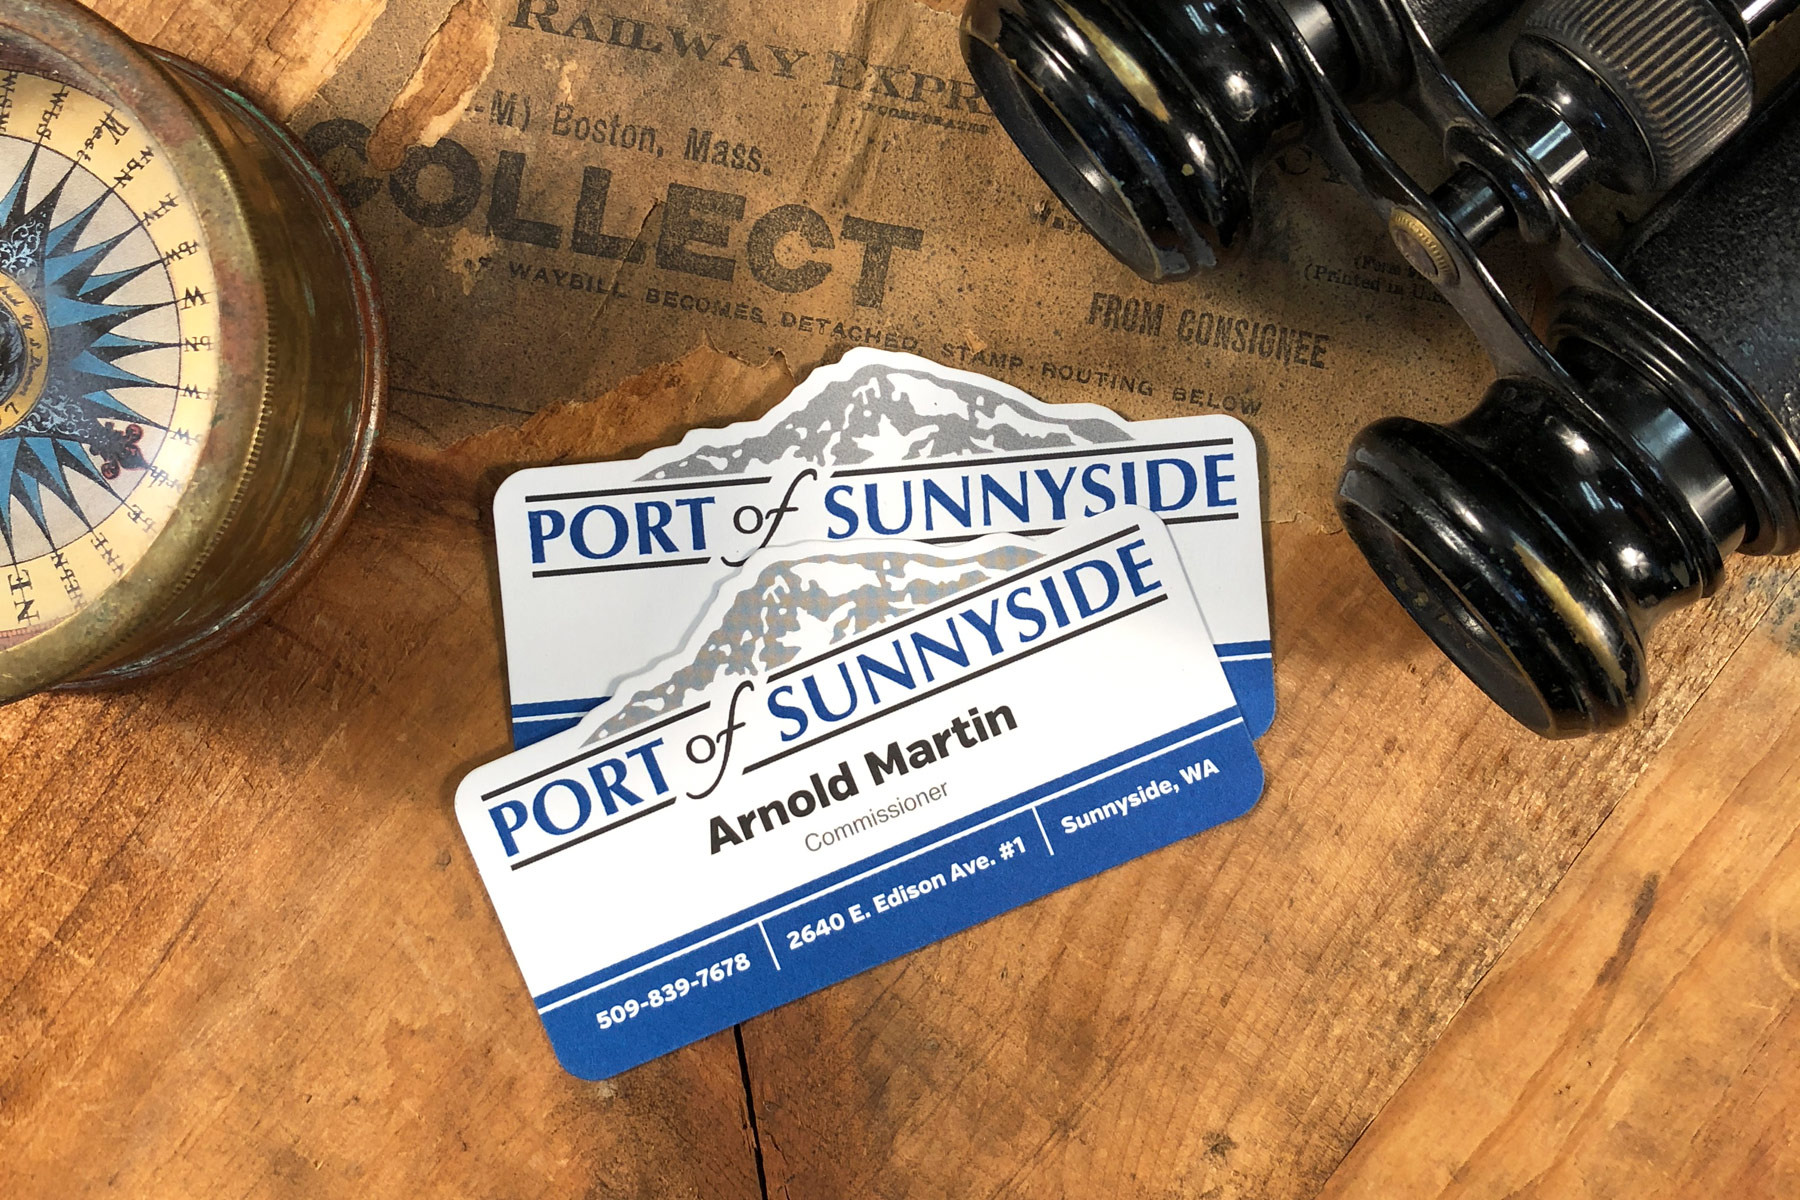 Port of Sunnyside